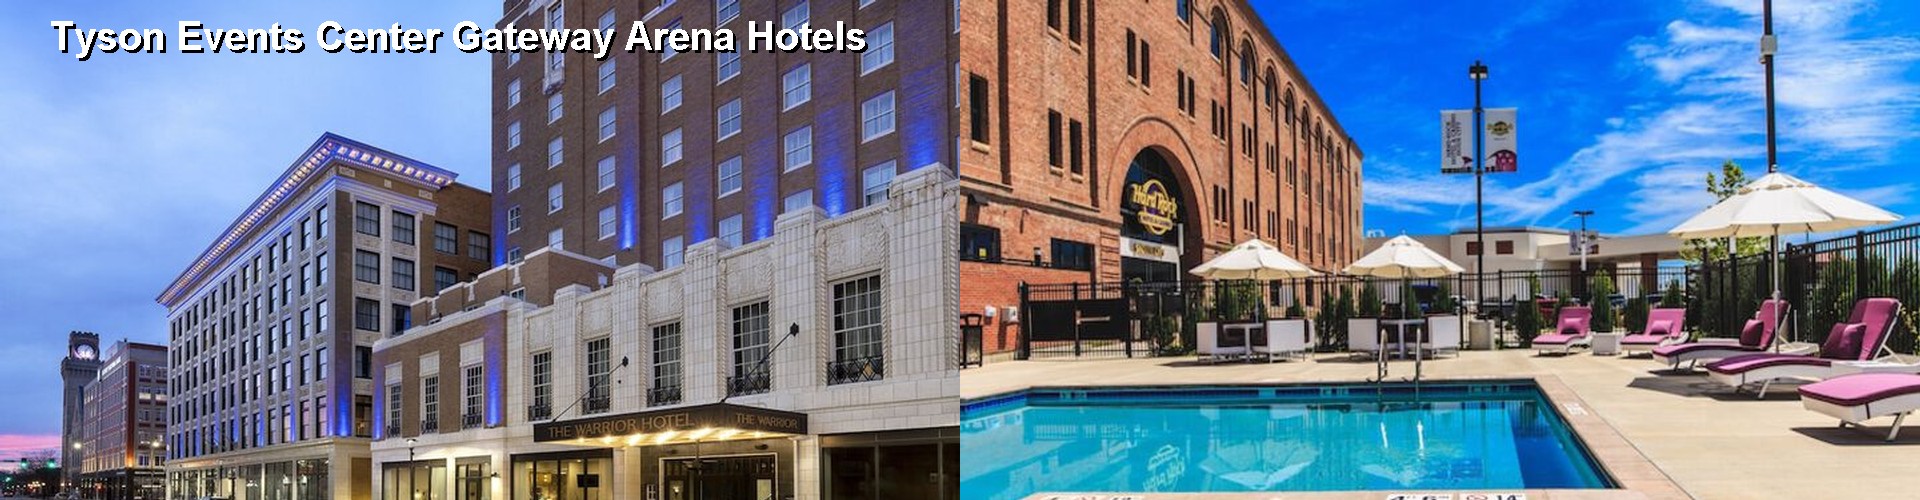 4 Best Hotels near Tyson Events Center Gateway Arena